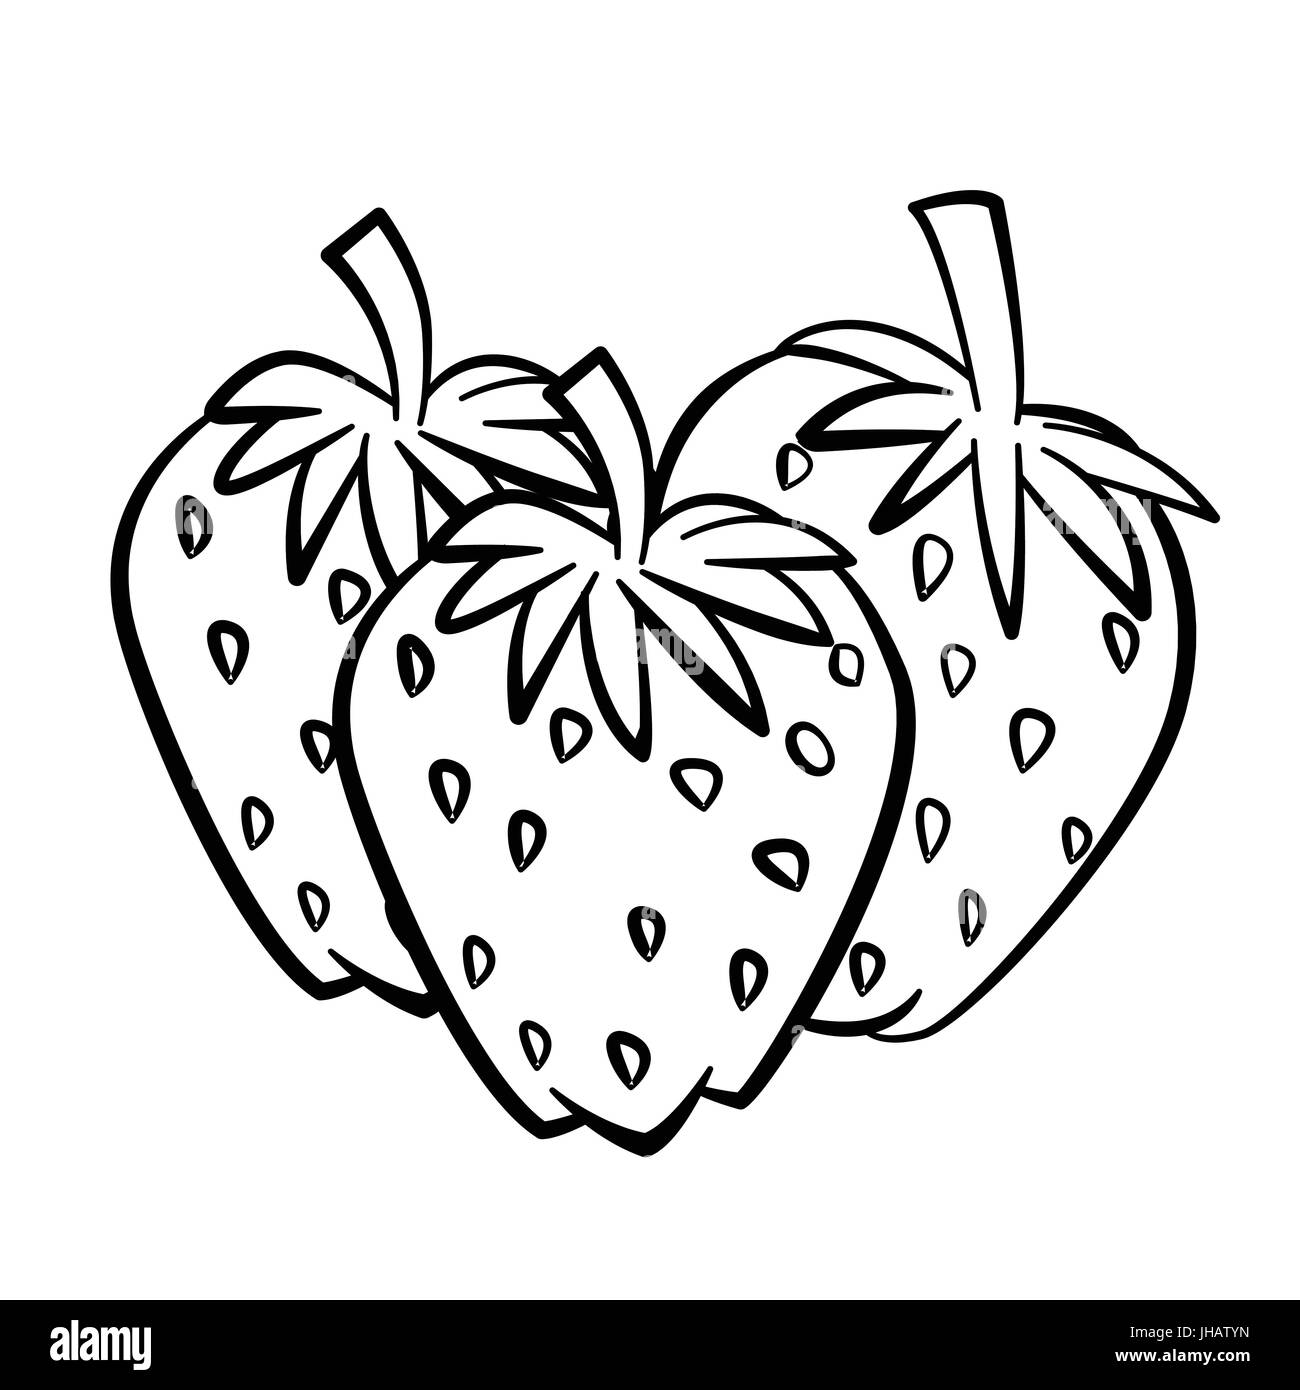 Hand gezeichnete Skizze der Erdbeere mit Zweig und Blatt isoliert, schwarz / weiß-Cartoon-Vektor-Illustration für Coloring Book - Linie gezeichnet Vektor Stock Vektor